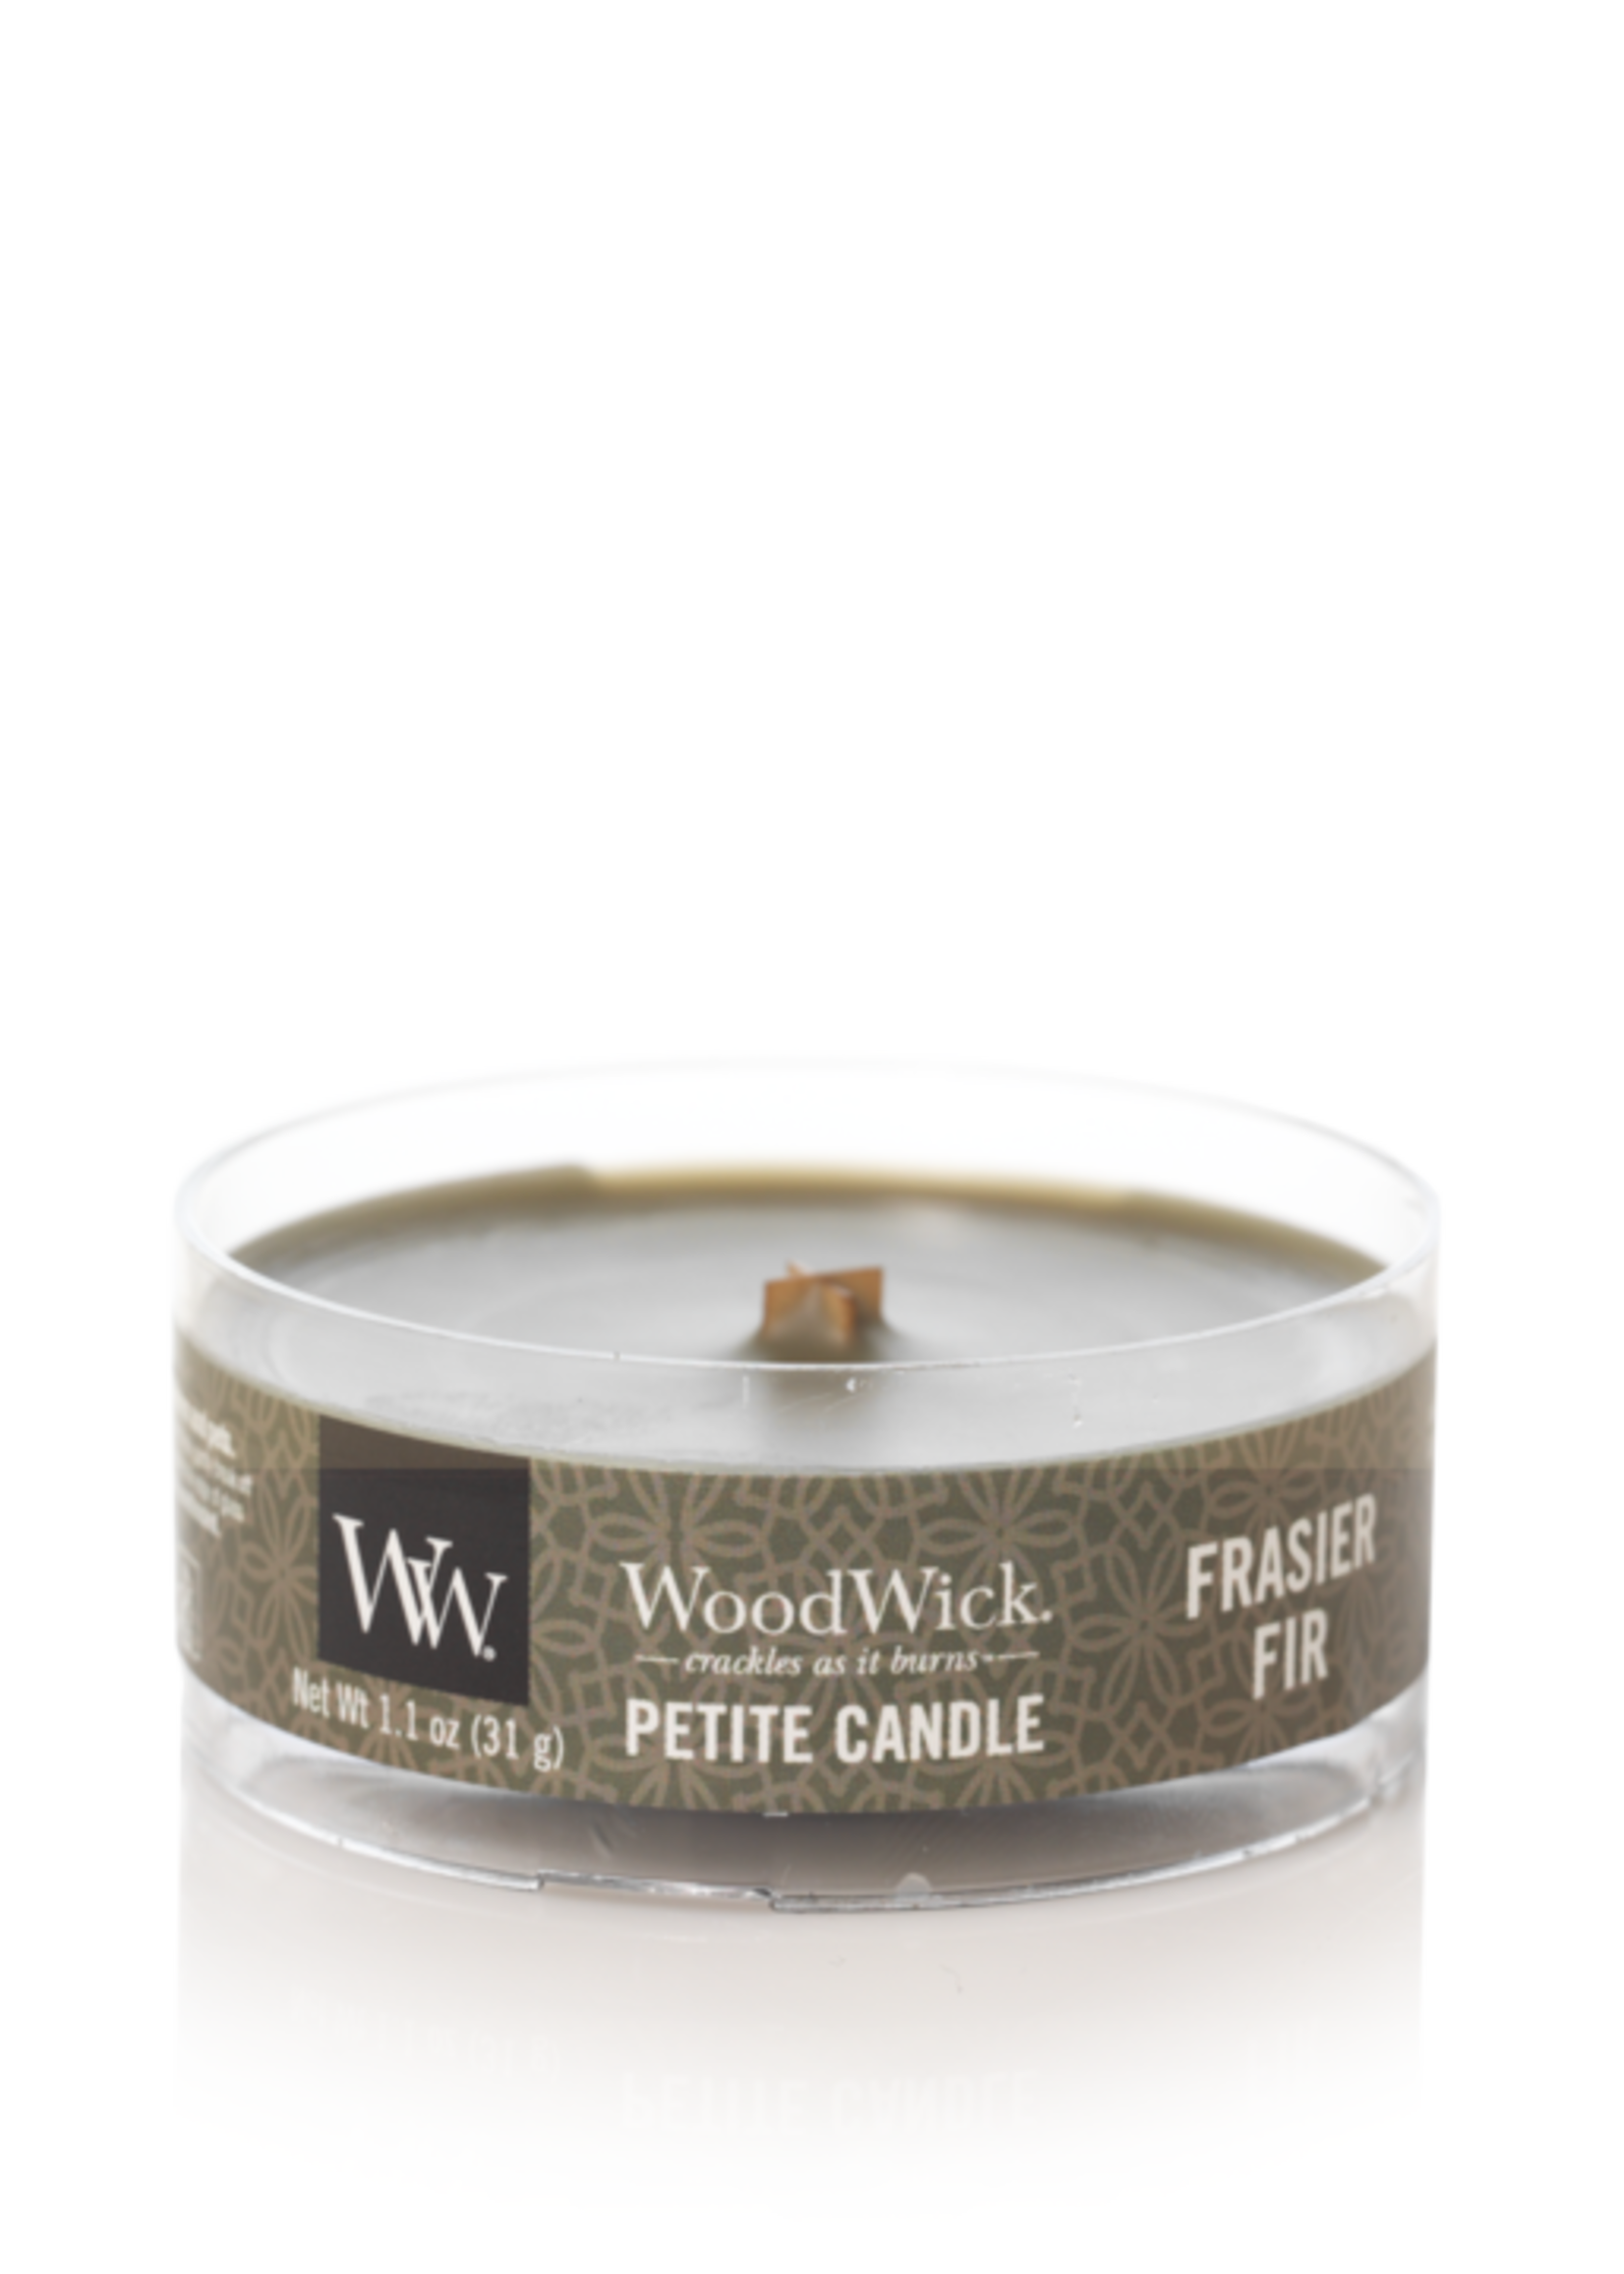 Woodwick Frasier fir petite candle